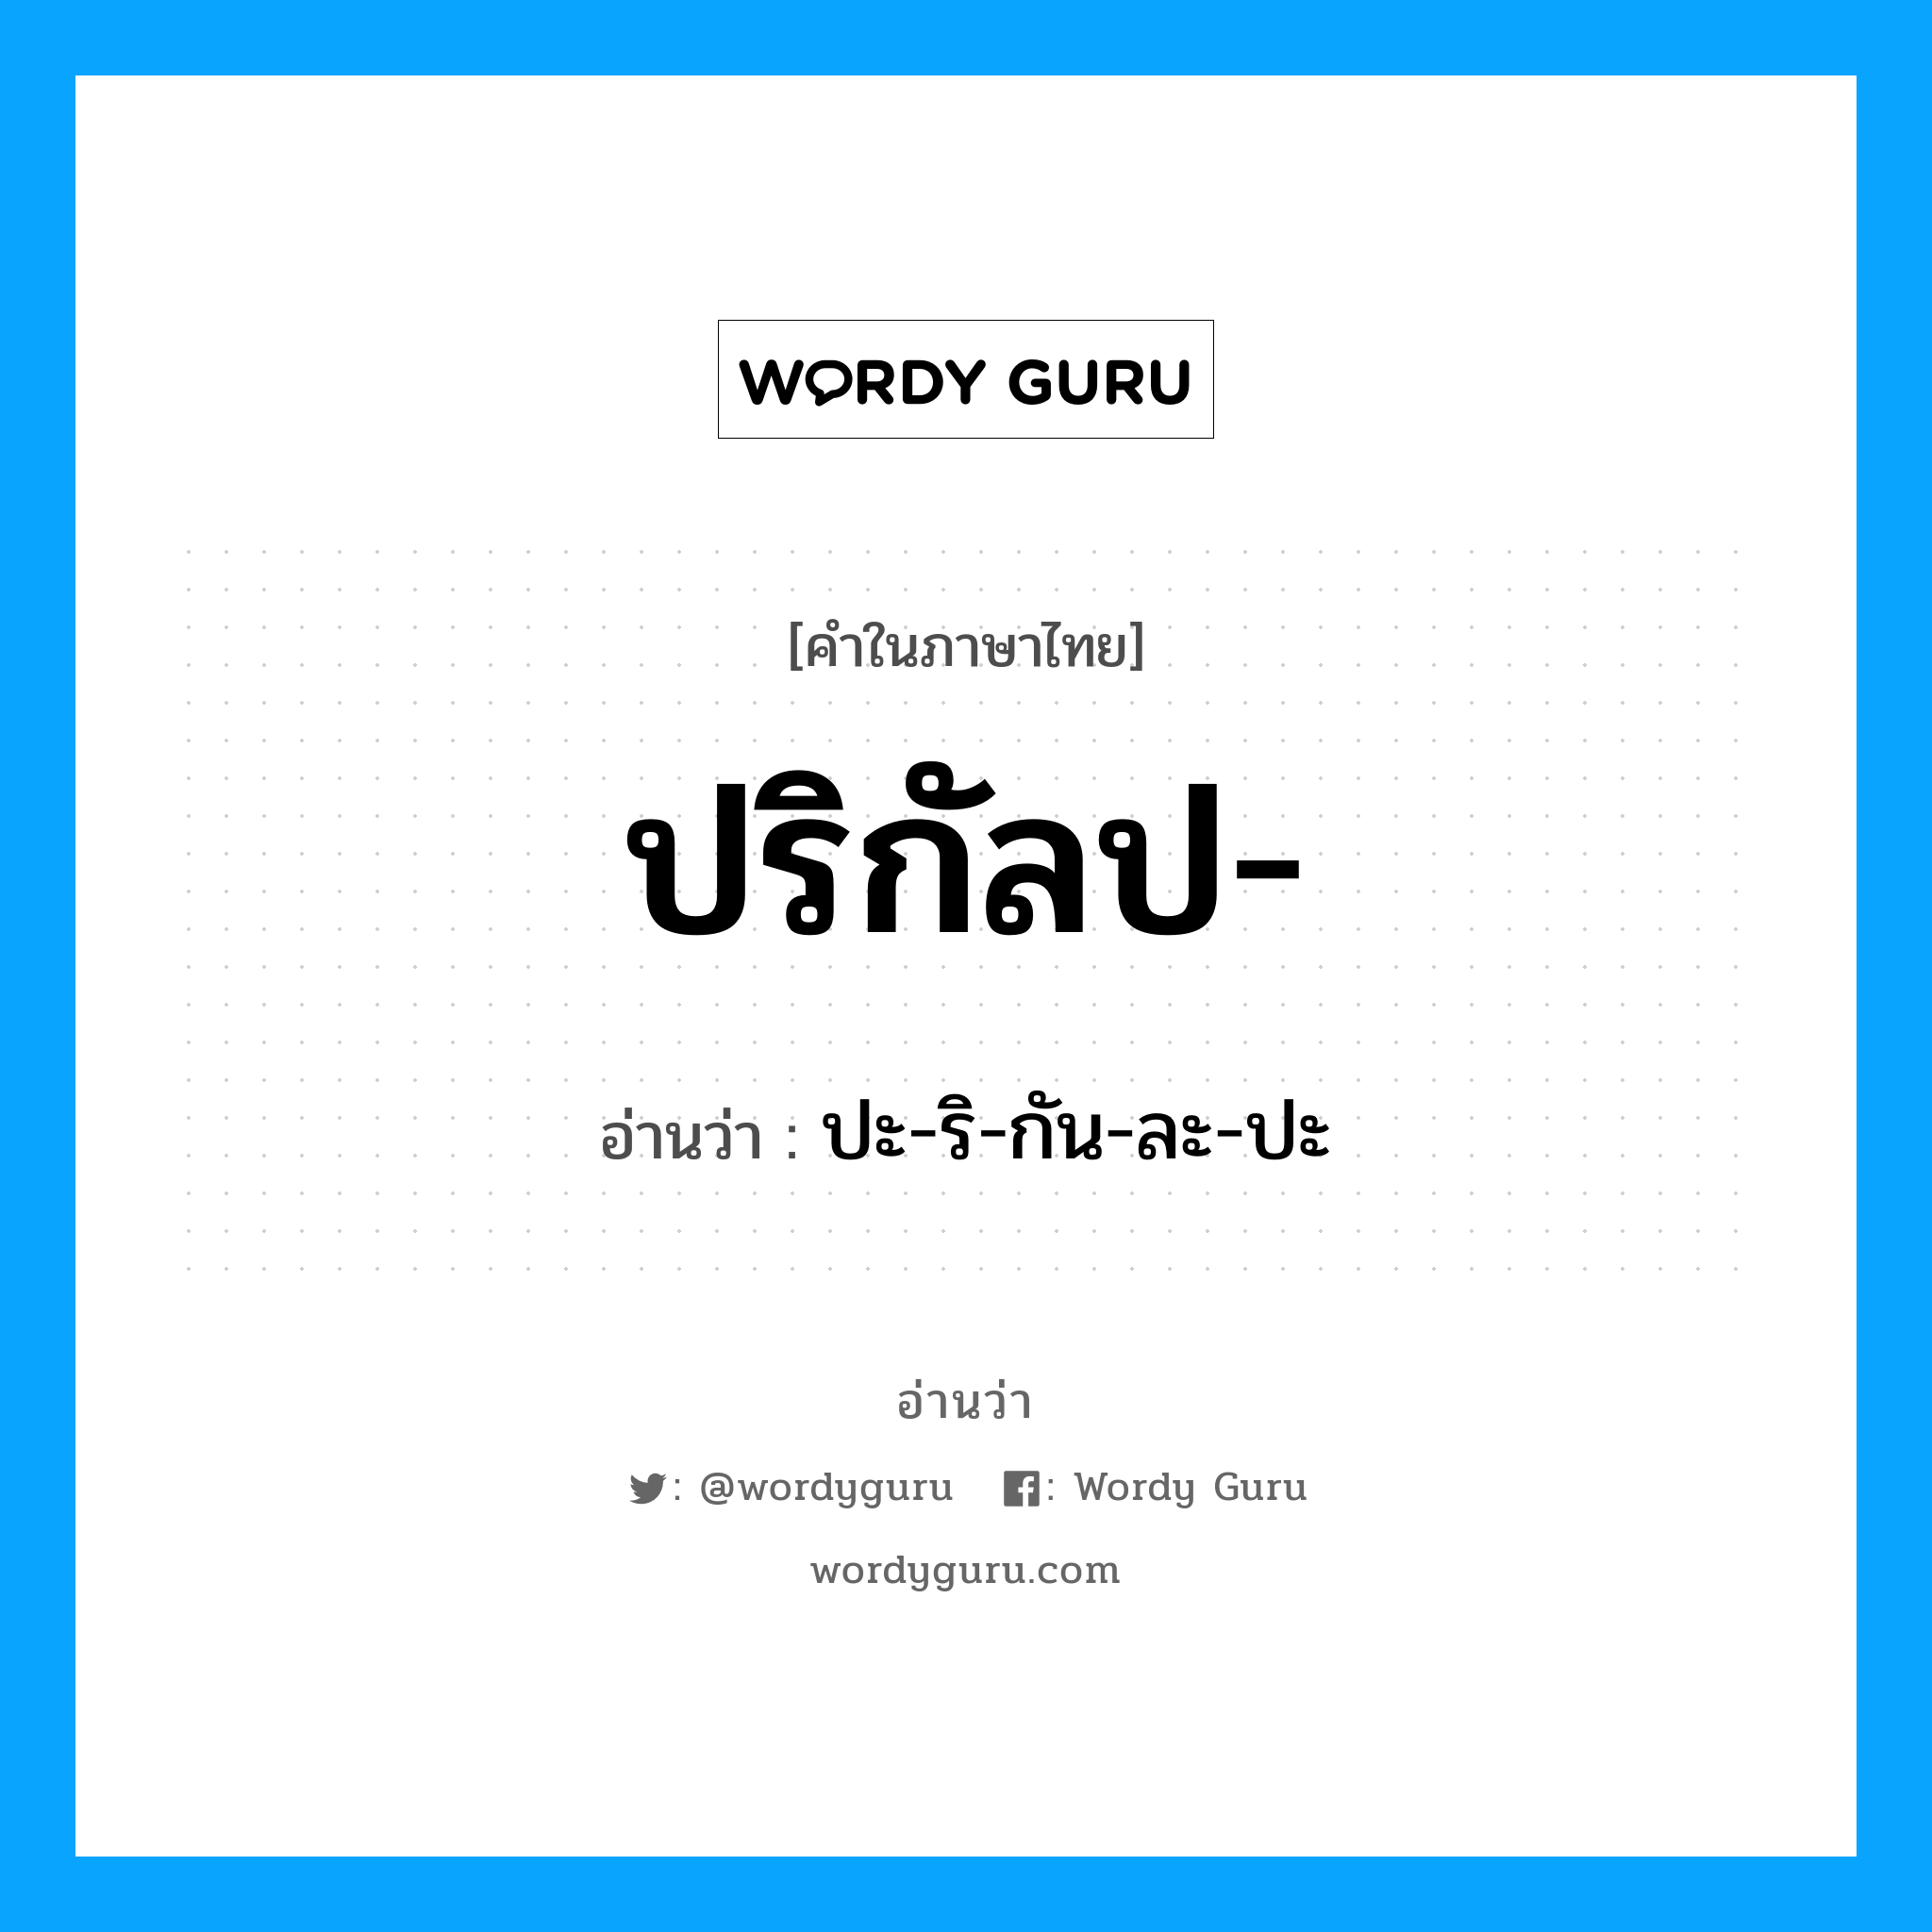 ปะ-ริ-กัน-ละ-ปะ เป็นคำอ่านของคำไหน?, คำในภาษาไทย ปะ-ริ-กัน-ละ-ปะ อ่านว่า ปริกัลป-